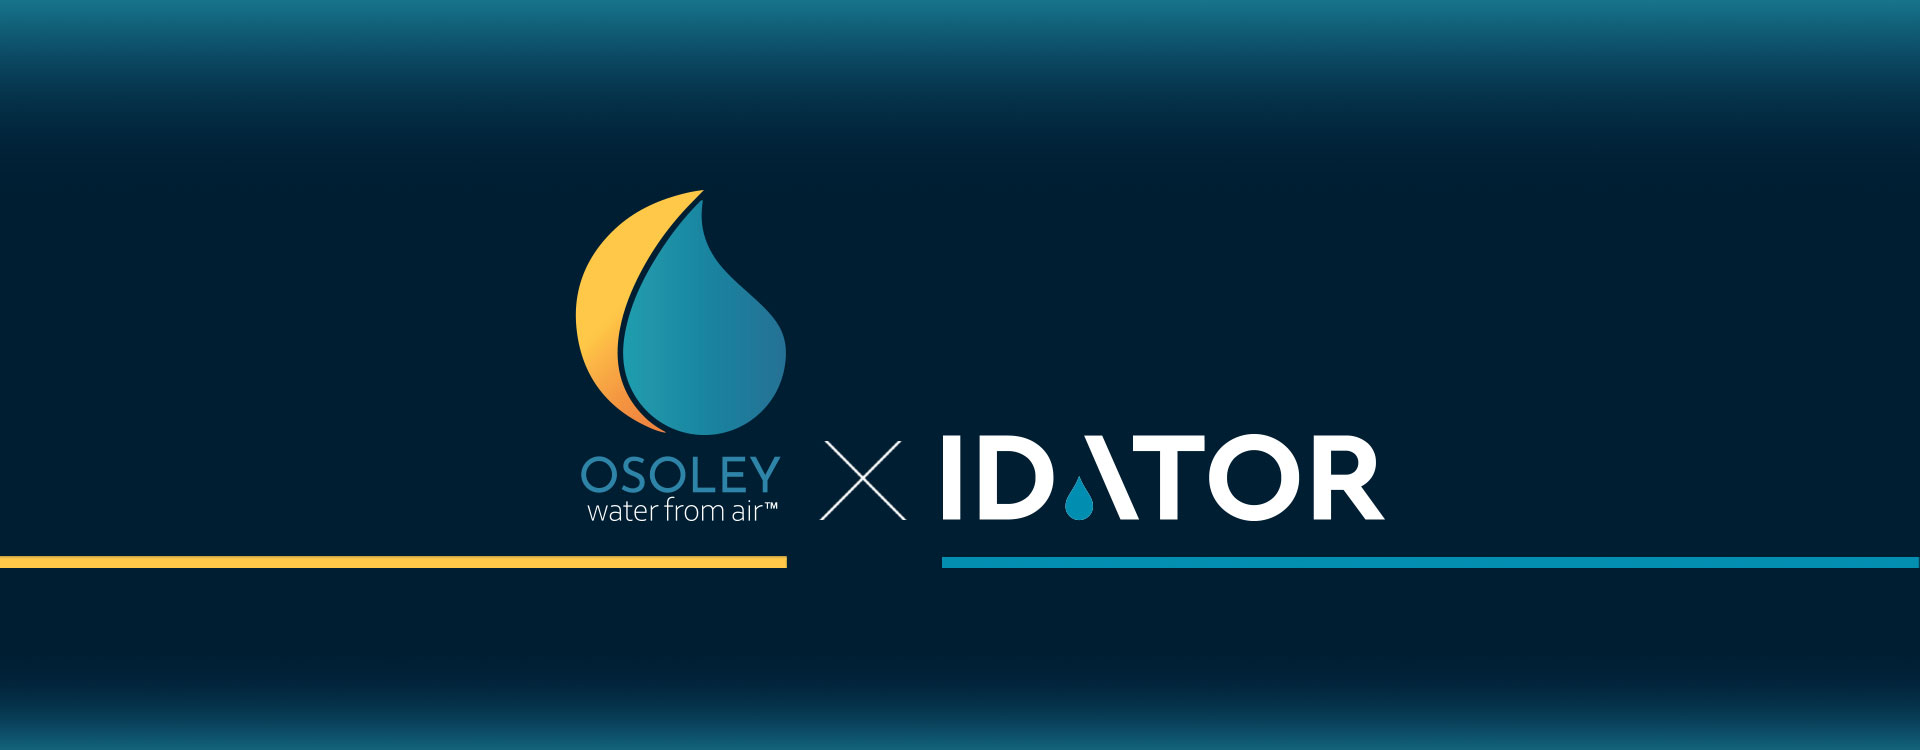 Νέα συνεργασία Idator – Osoley